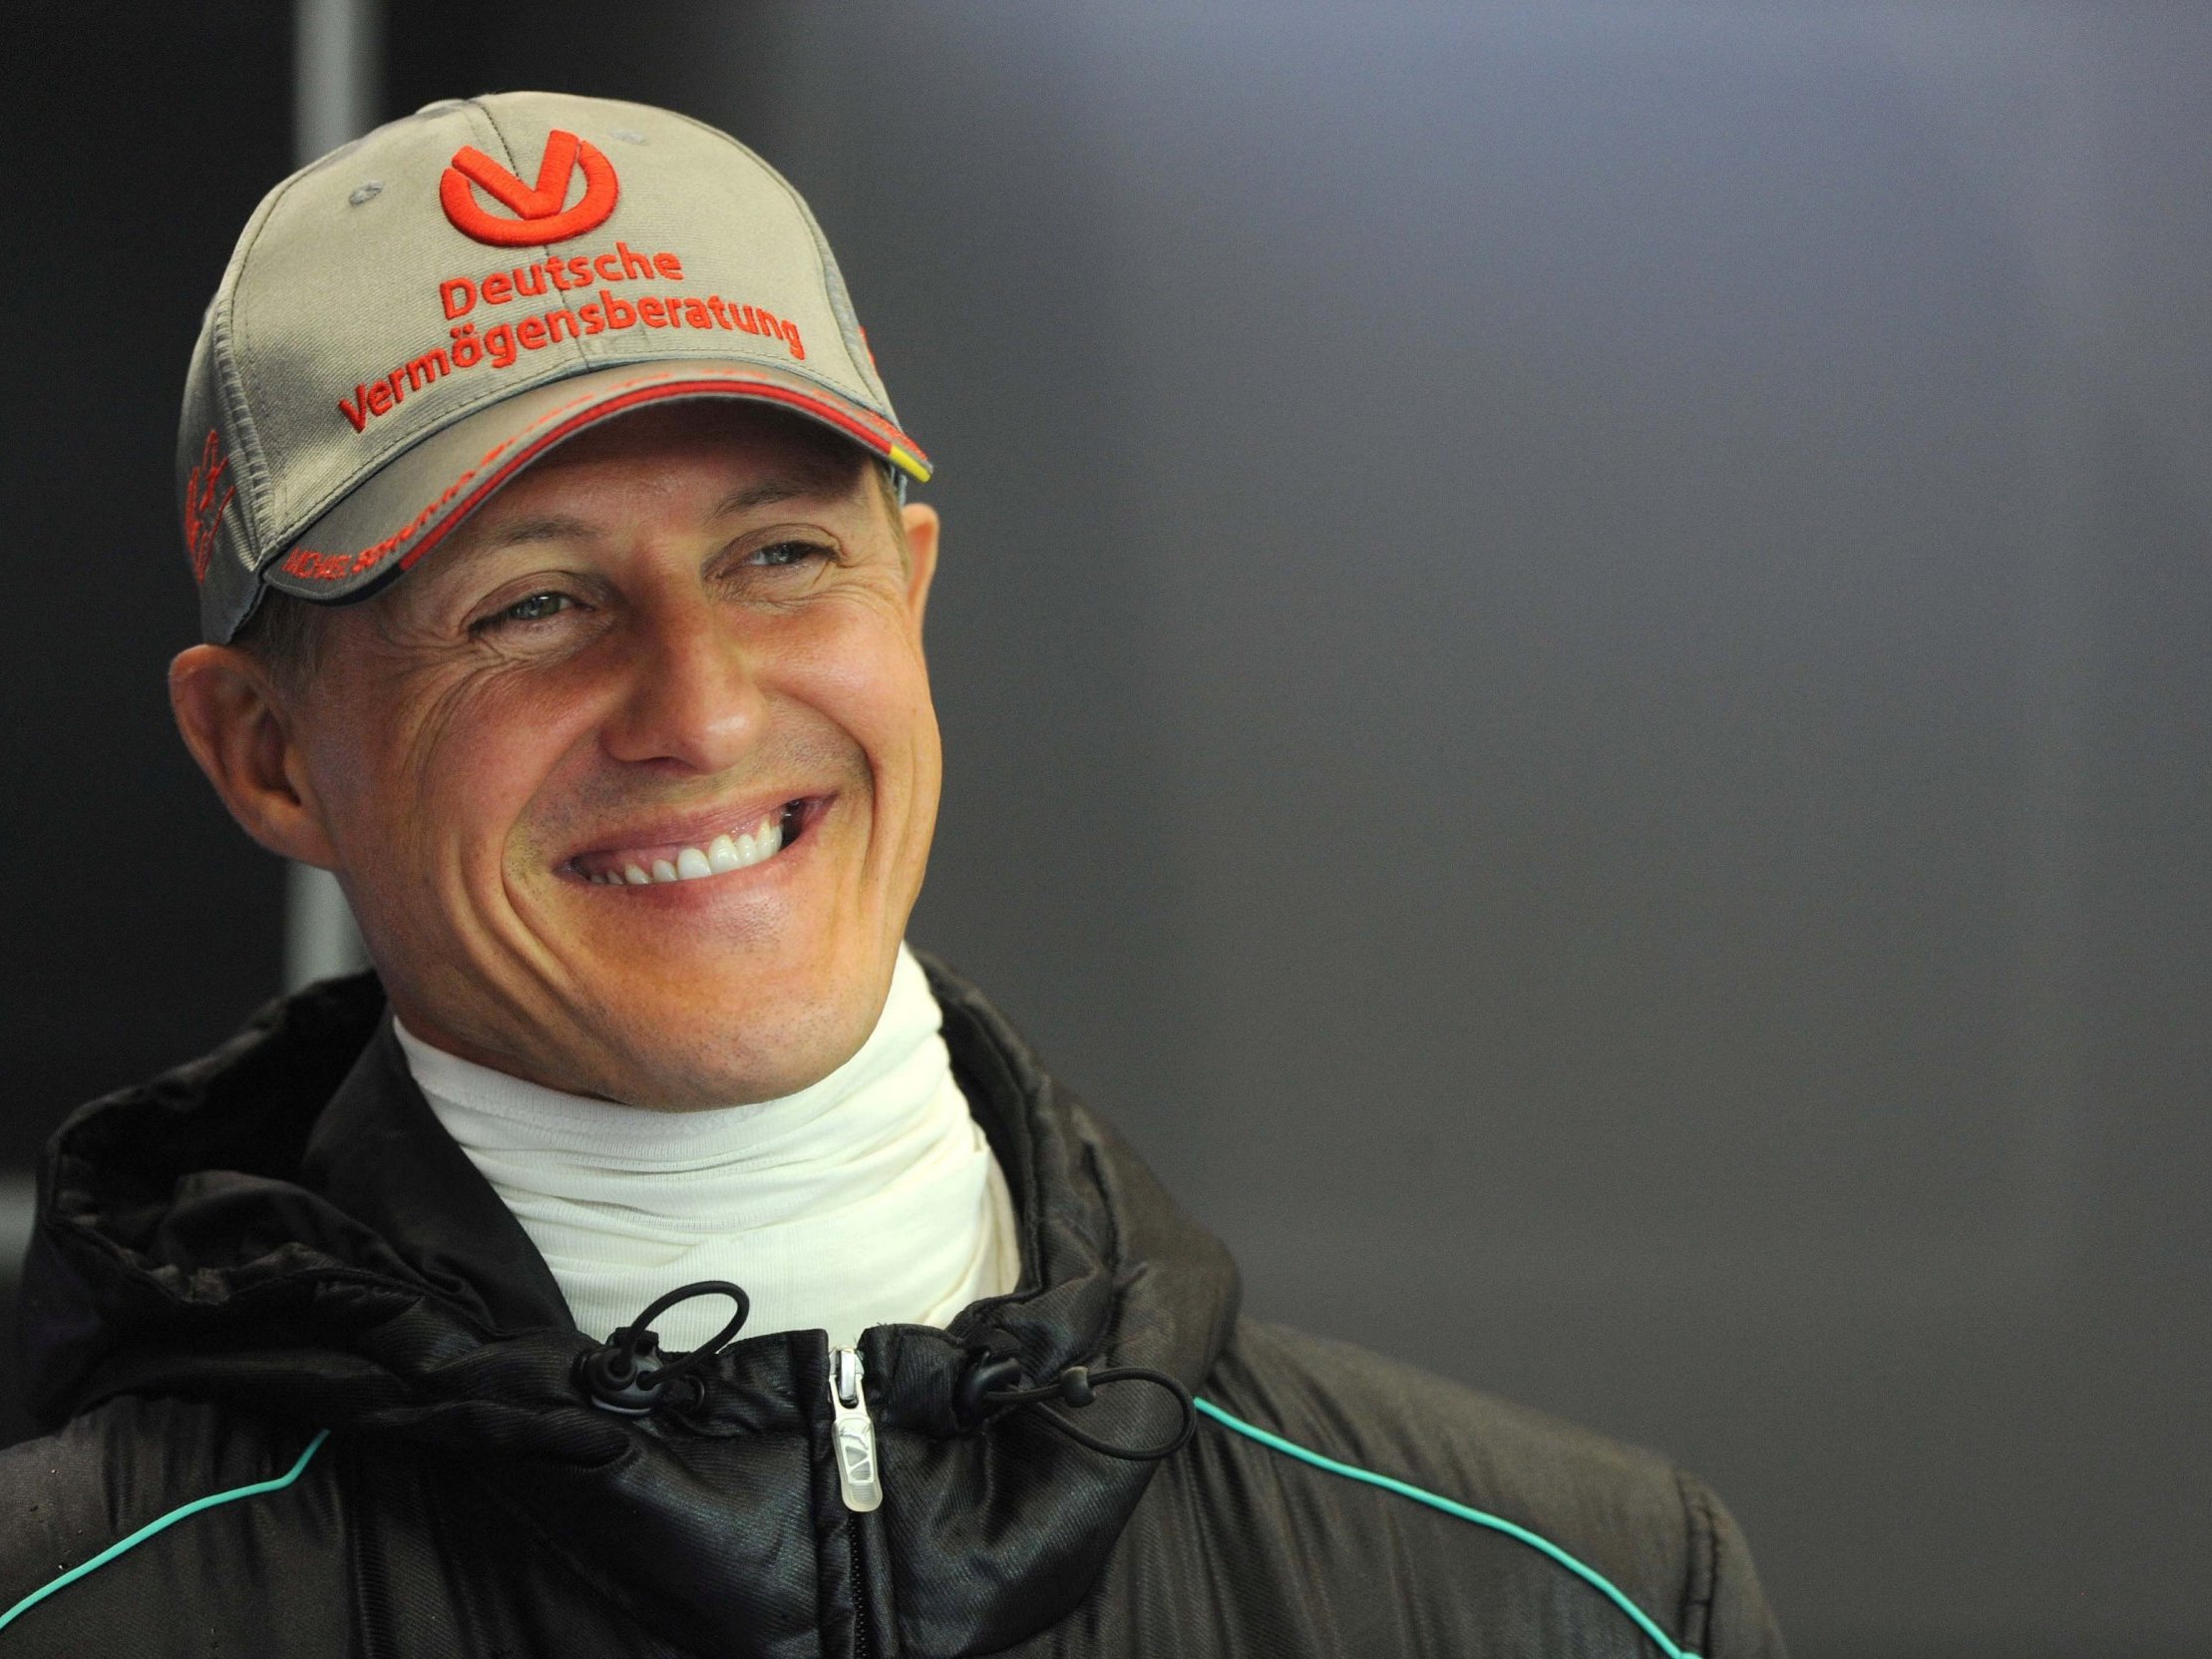 Michael Schumacher : Les confidences poignantes de son ami Jean Todt